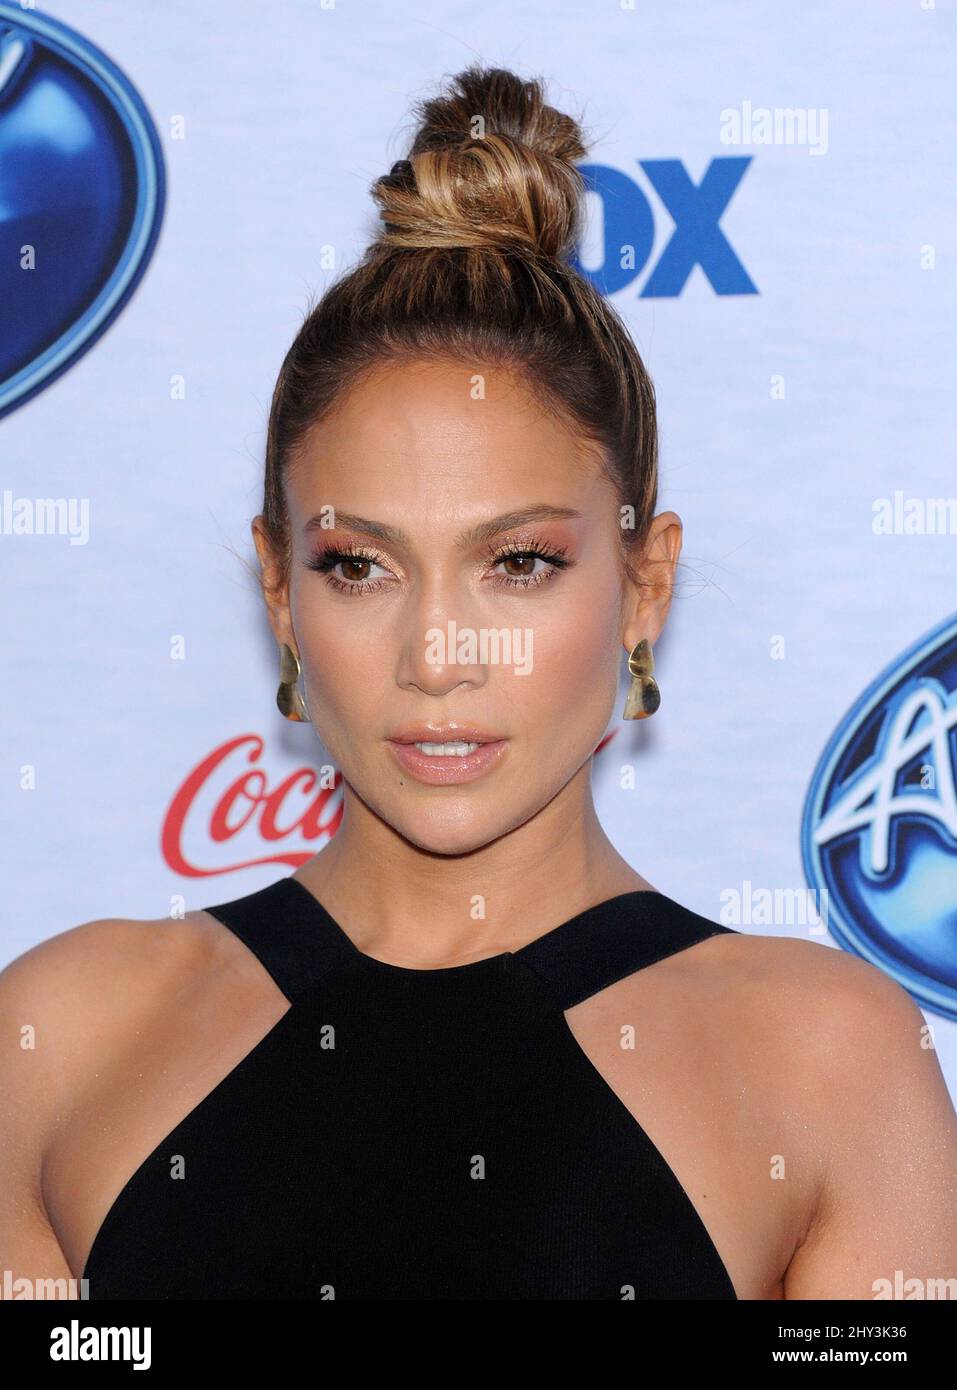 Jennifer Lopez participe à l'événement des 13 finalistes de l'American Idol, à Los Angeles Banque D'Images